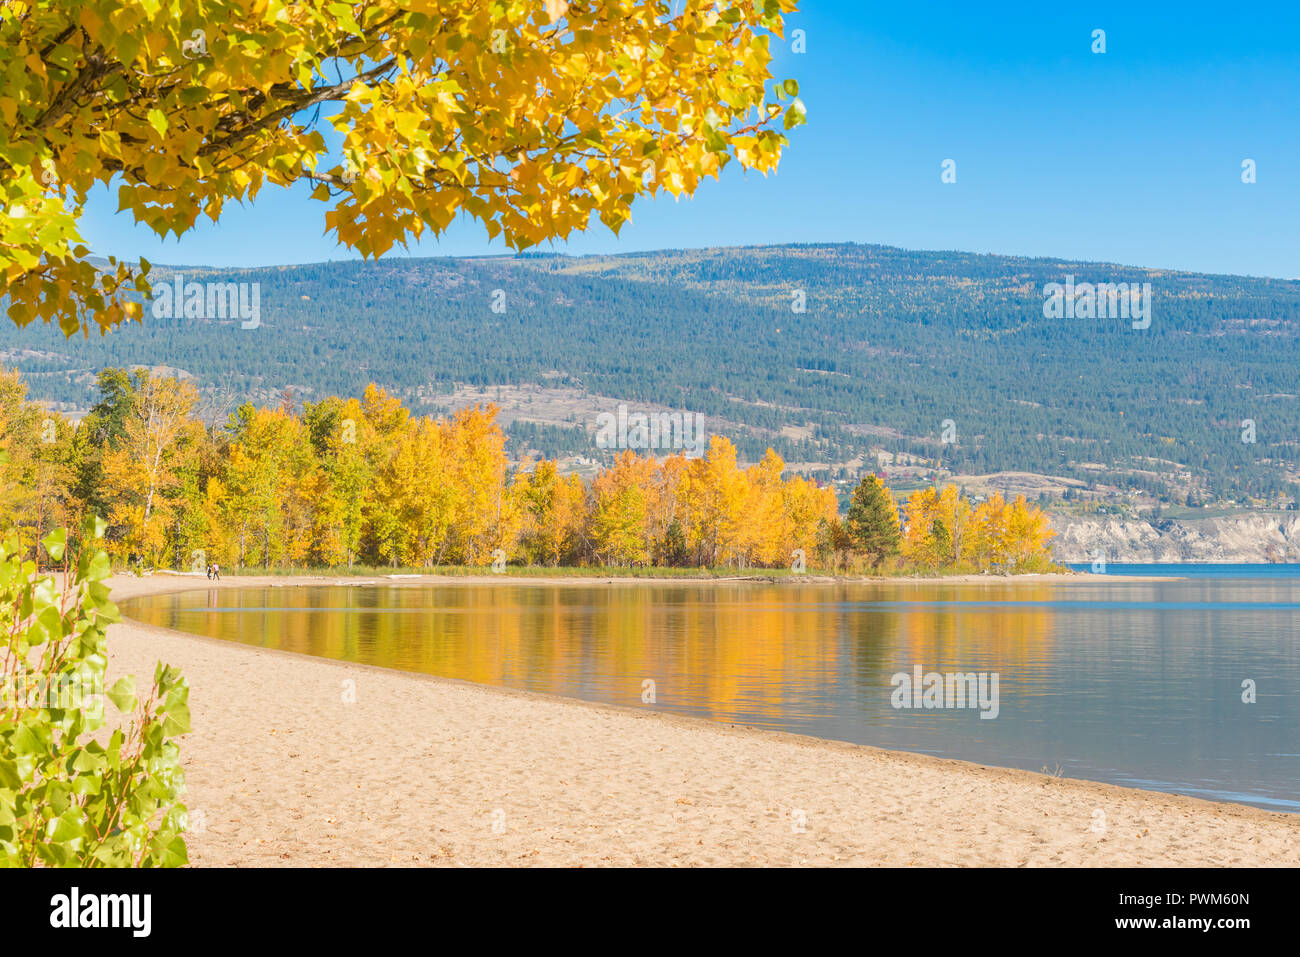 Playa de arena y el lago rodeado de árboles con hojas de otoño amarillo Foto de stock